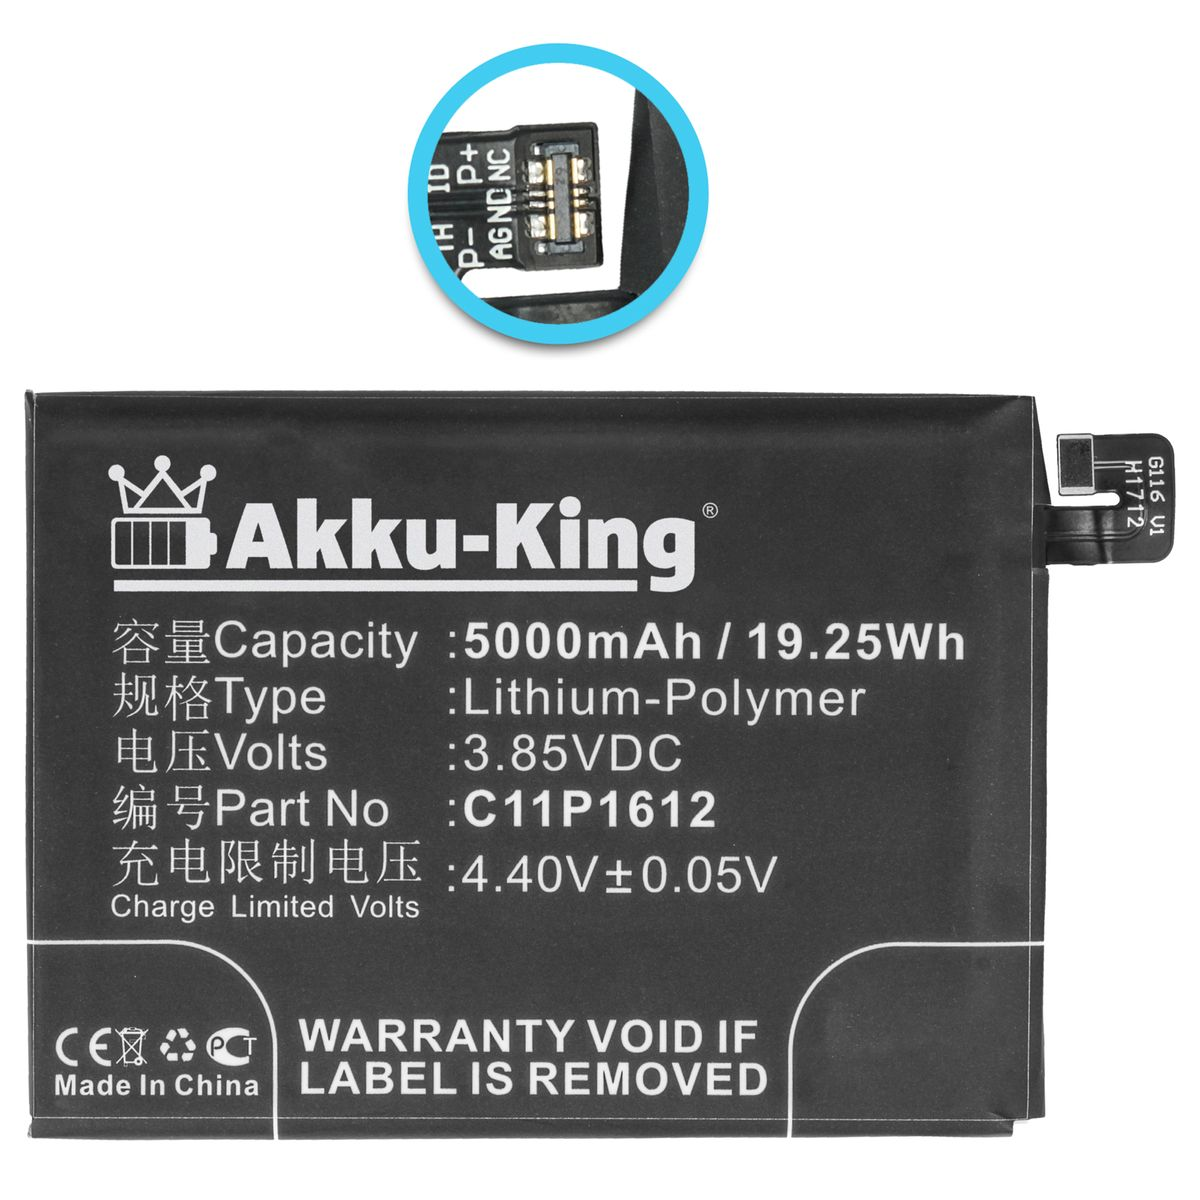 Volt, Asus Akku 5000mAh Li-Polymer Handy-Akku, AKKU-KING 3.85 für C11P1612